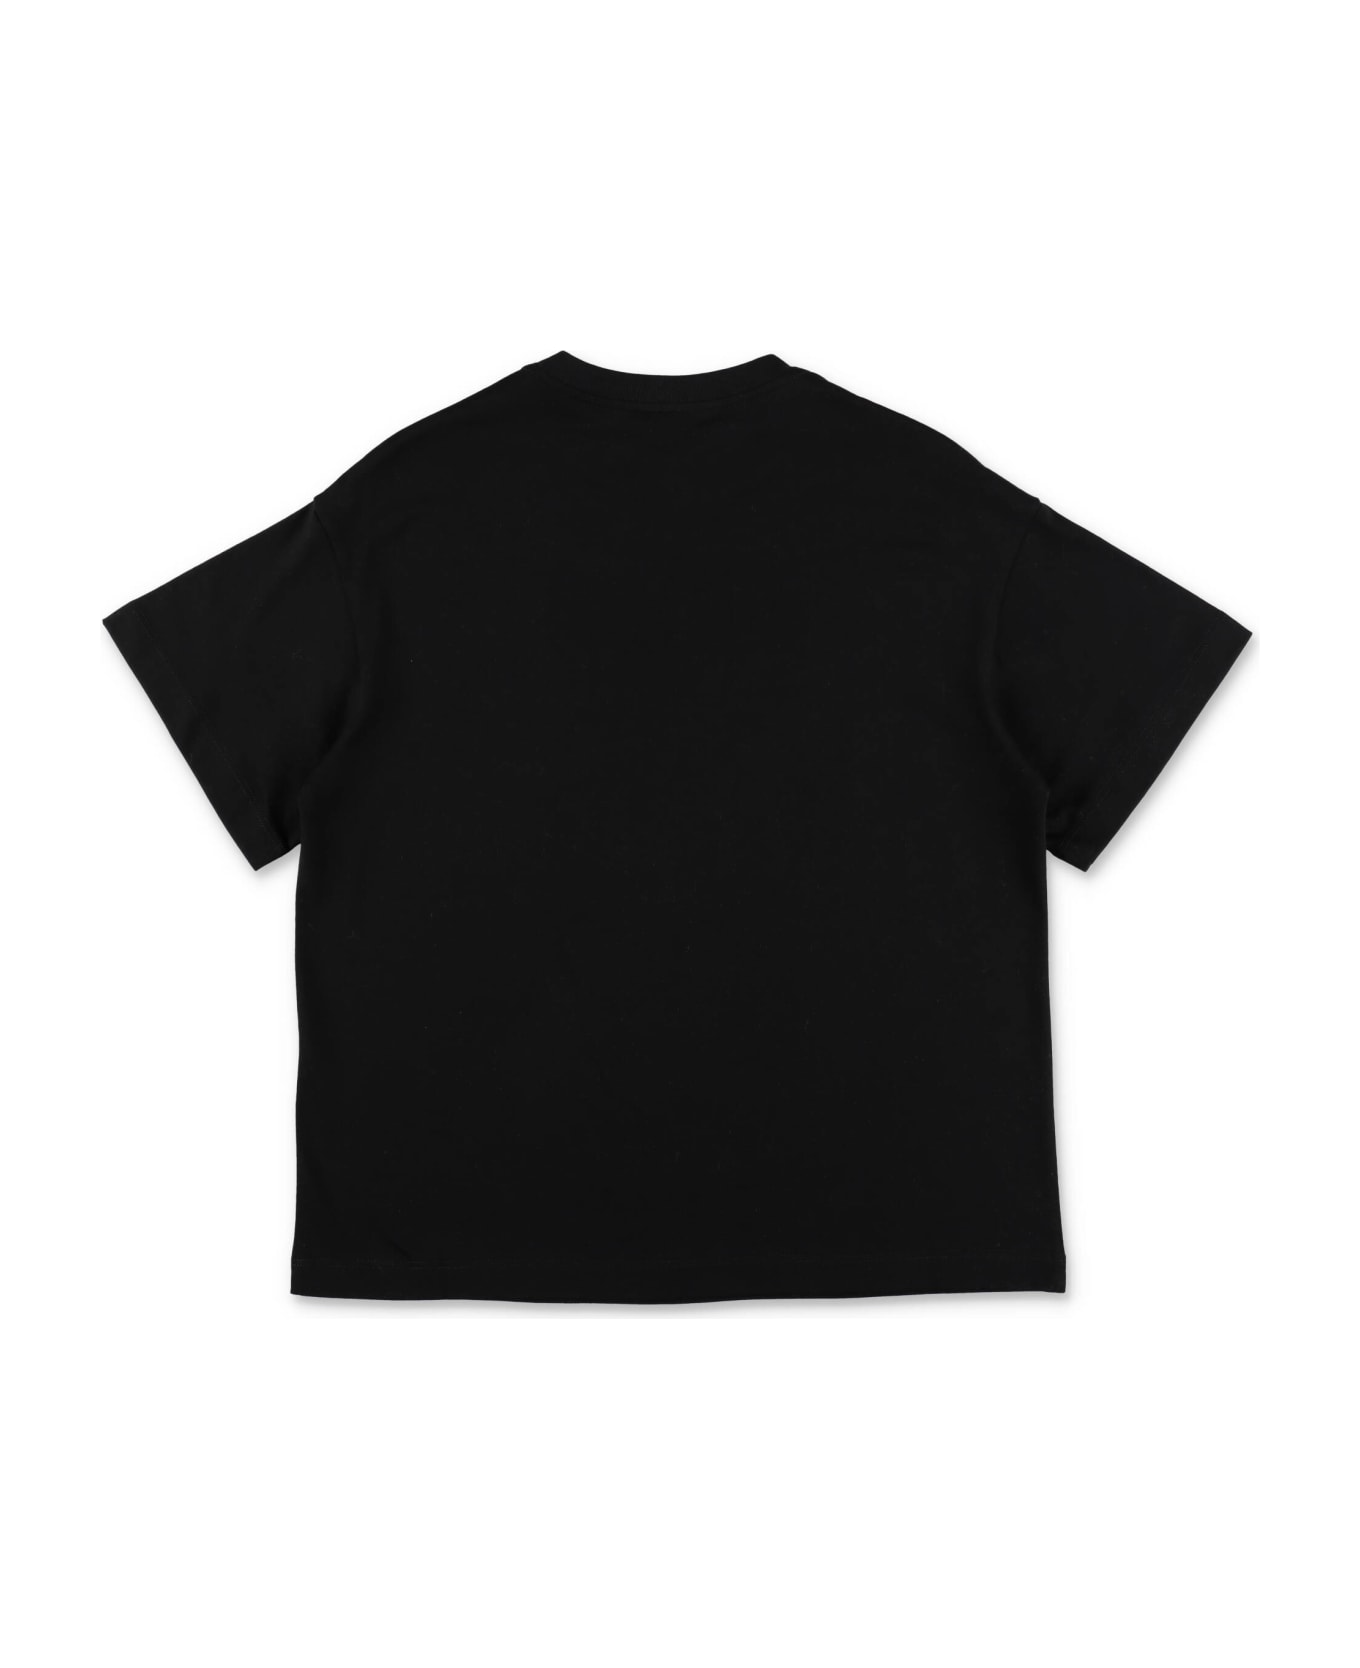 Fendi T-shirt Nera In Jersey Di Cotone Bambino - Nero